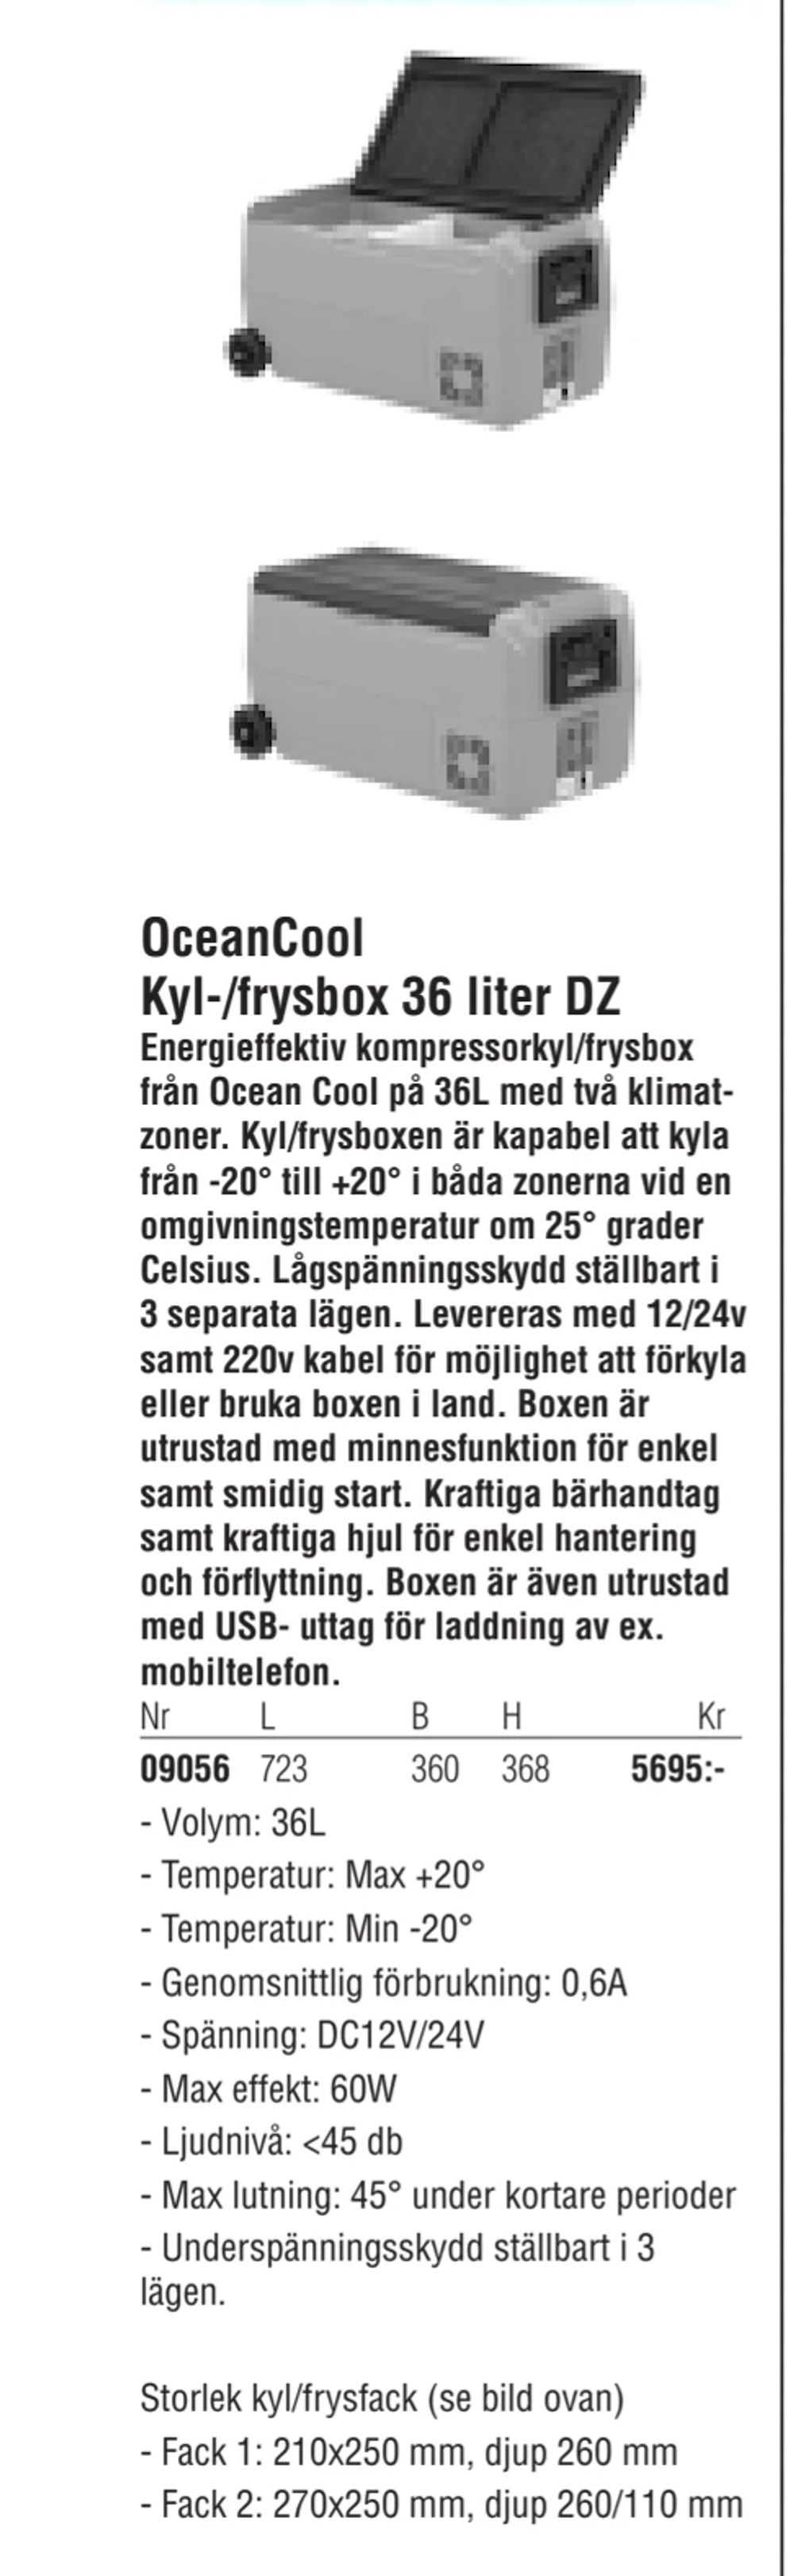 Erbjudanden på OceanCool Kyl-/frysbox 36 liter DZ från Erlandsons Brygga för 5 695 kr